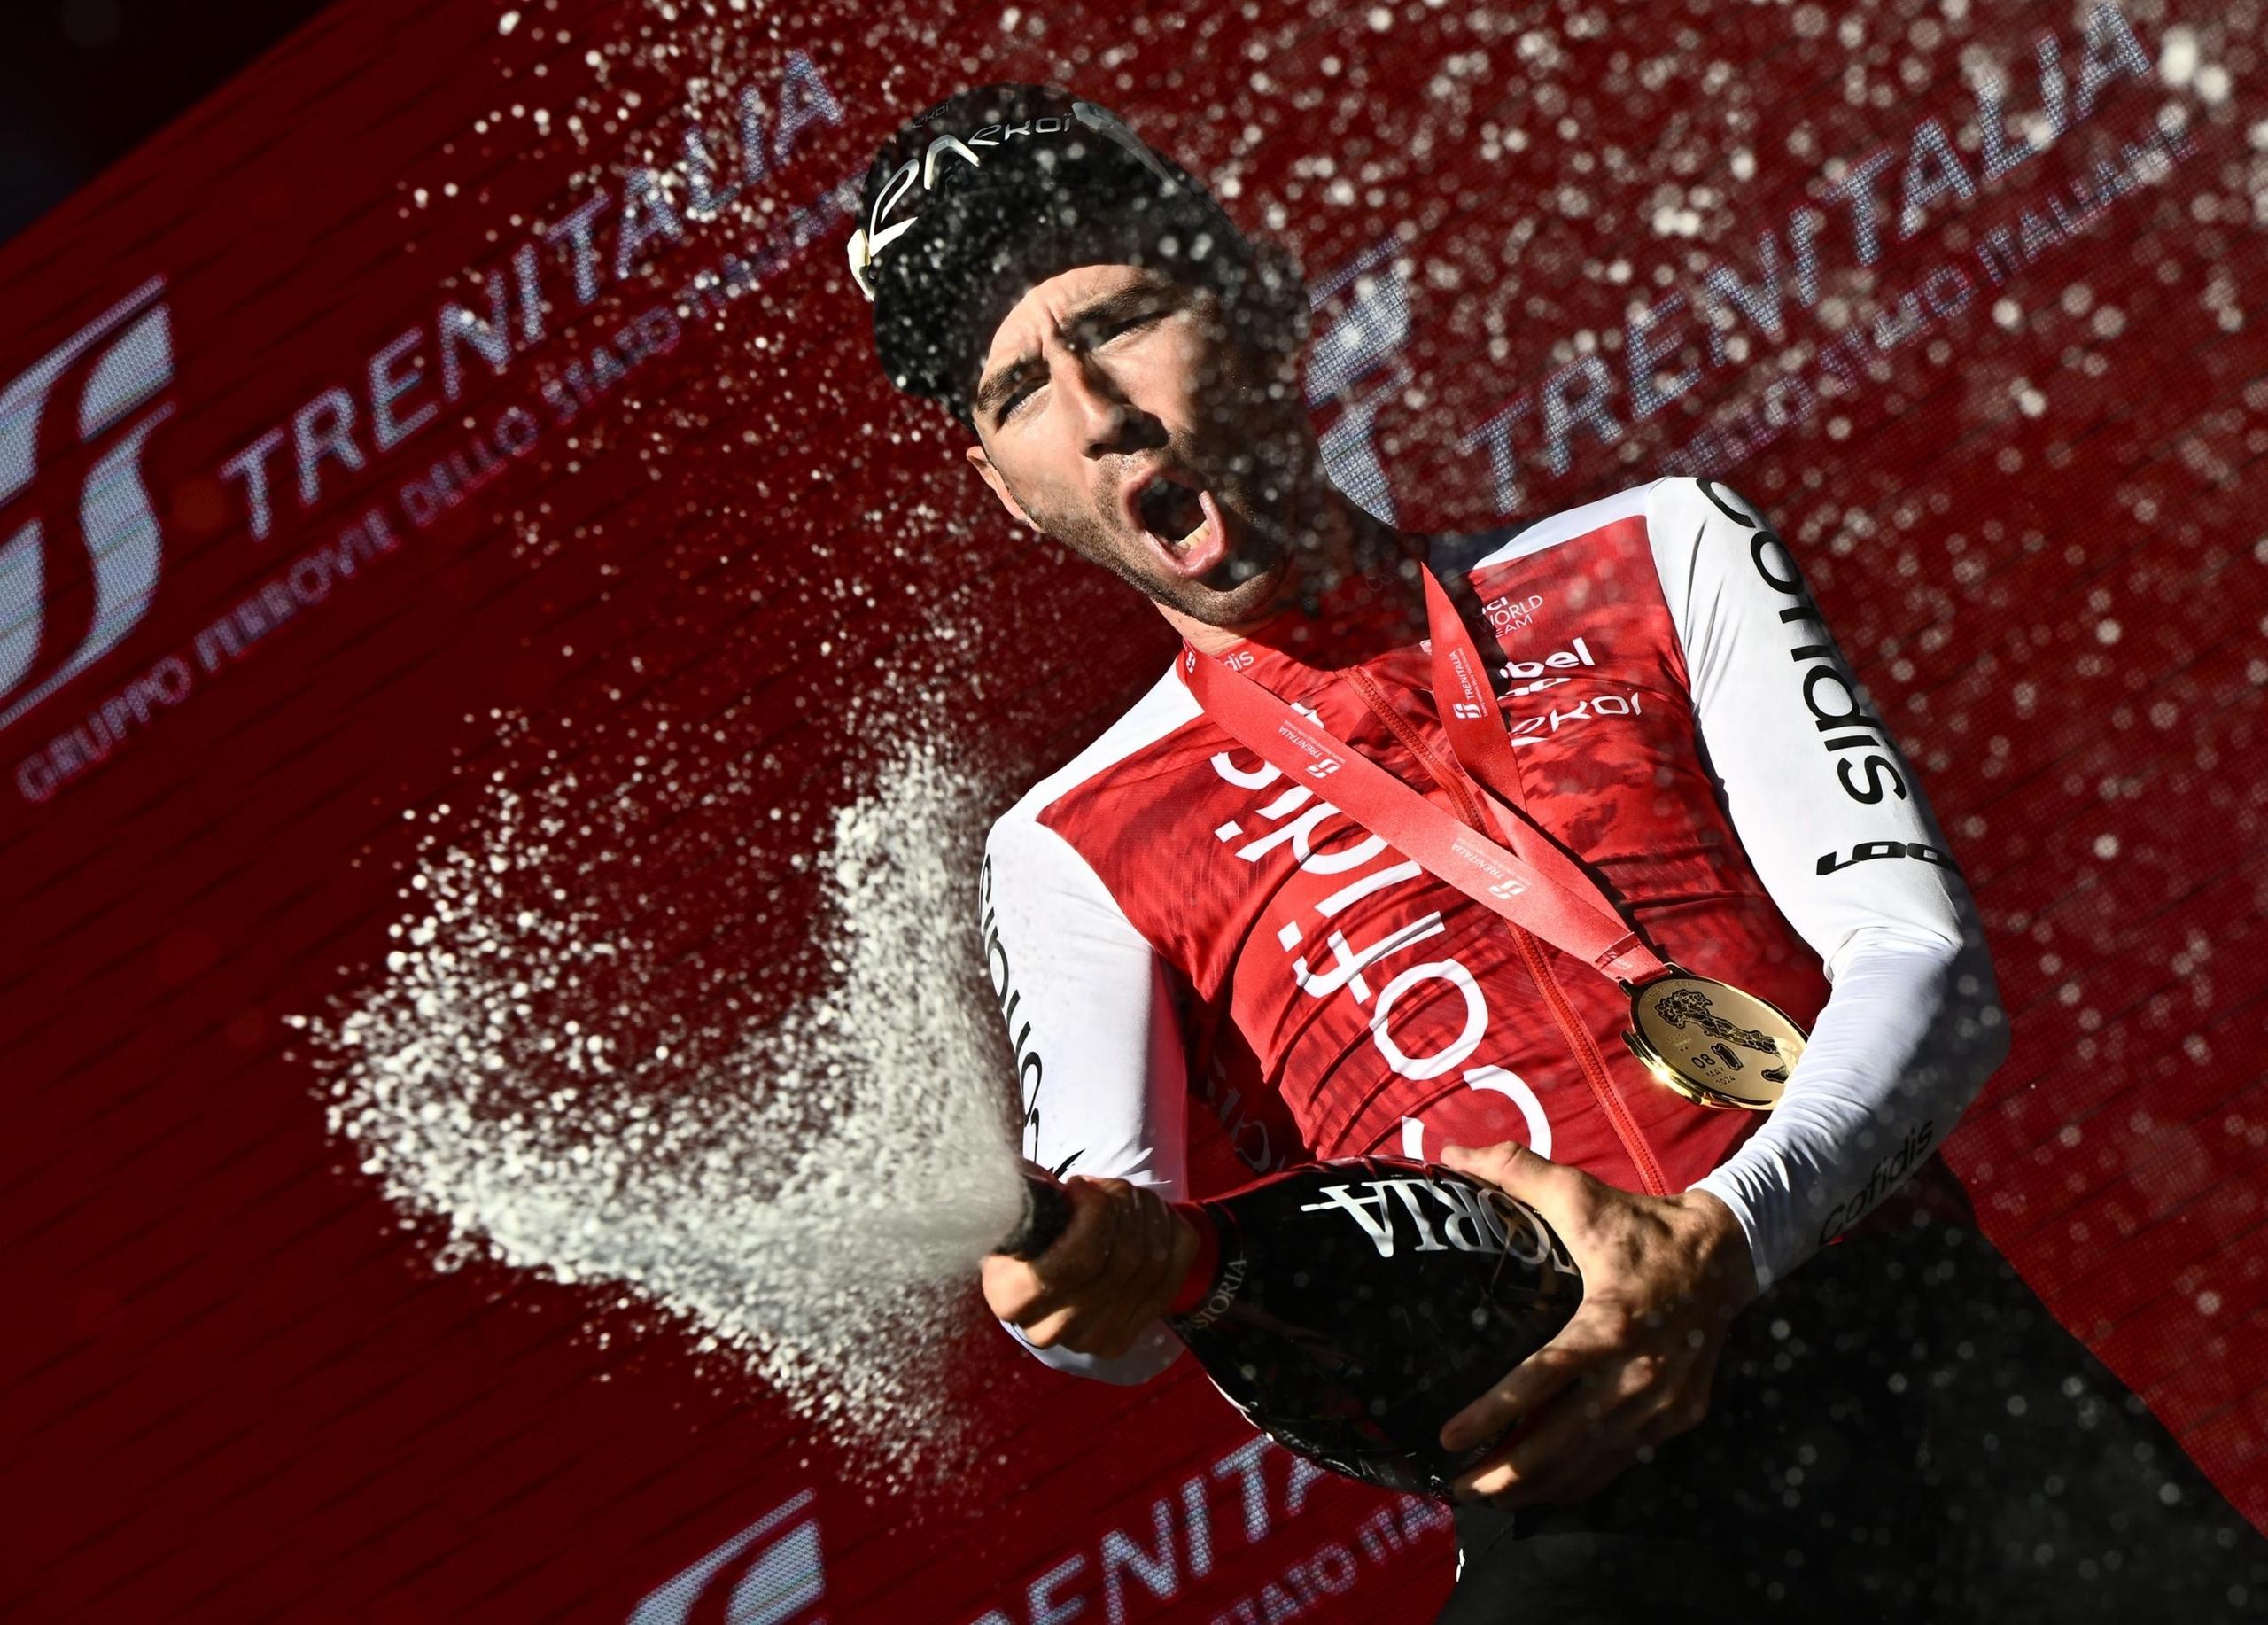 Le pagelle della tappa 5 del Giro d’Italia: Thomas da 10, grande Pietrobon. Male i team dei velocisti